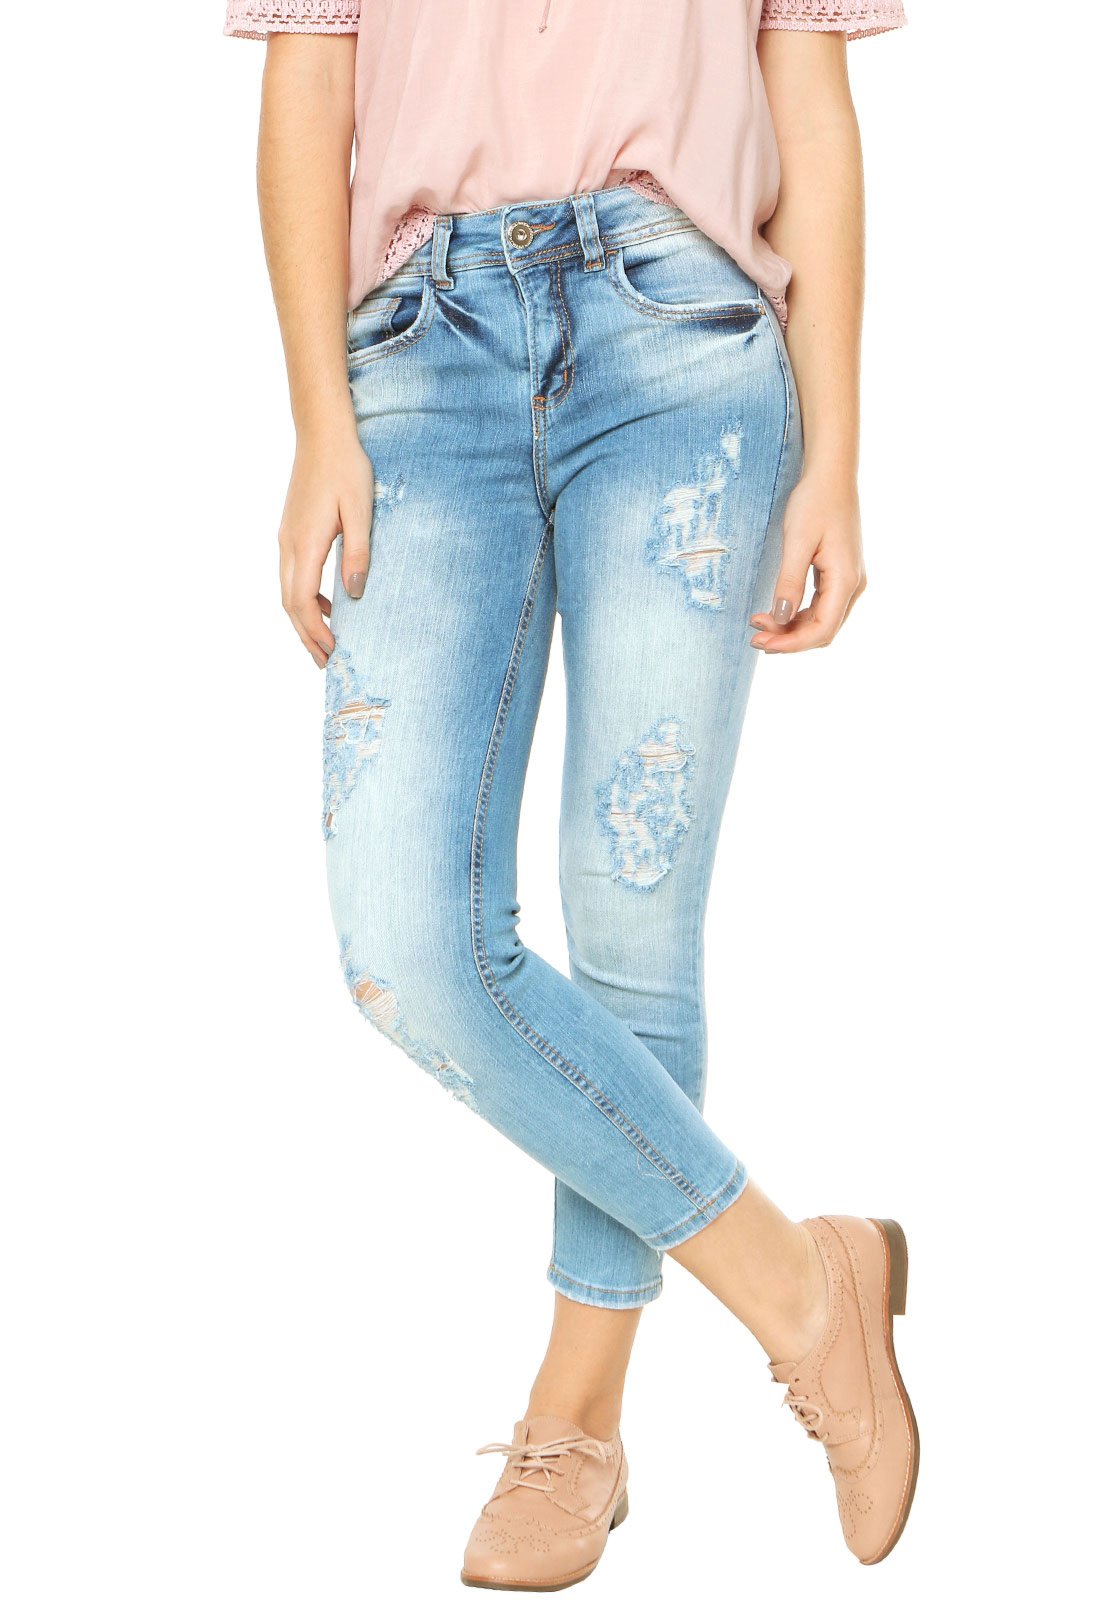 calça jeans colcci feminina 2018